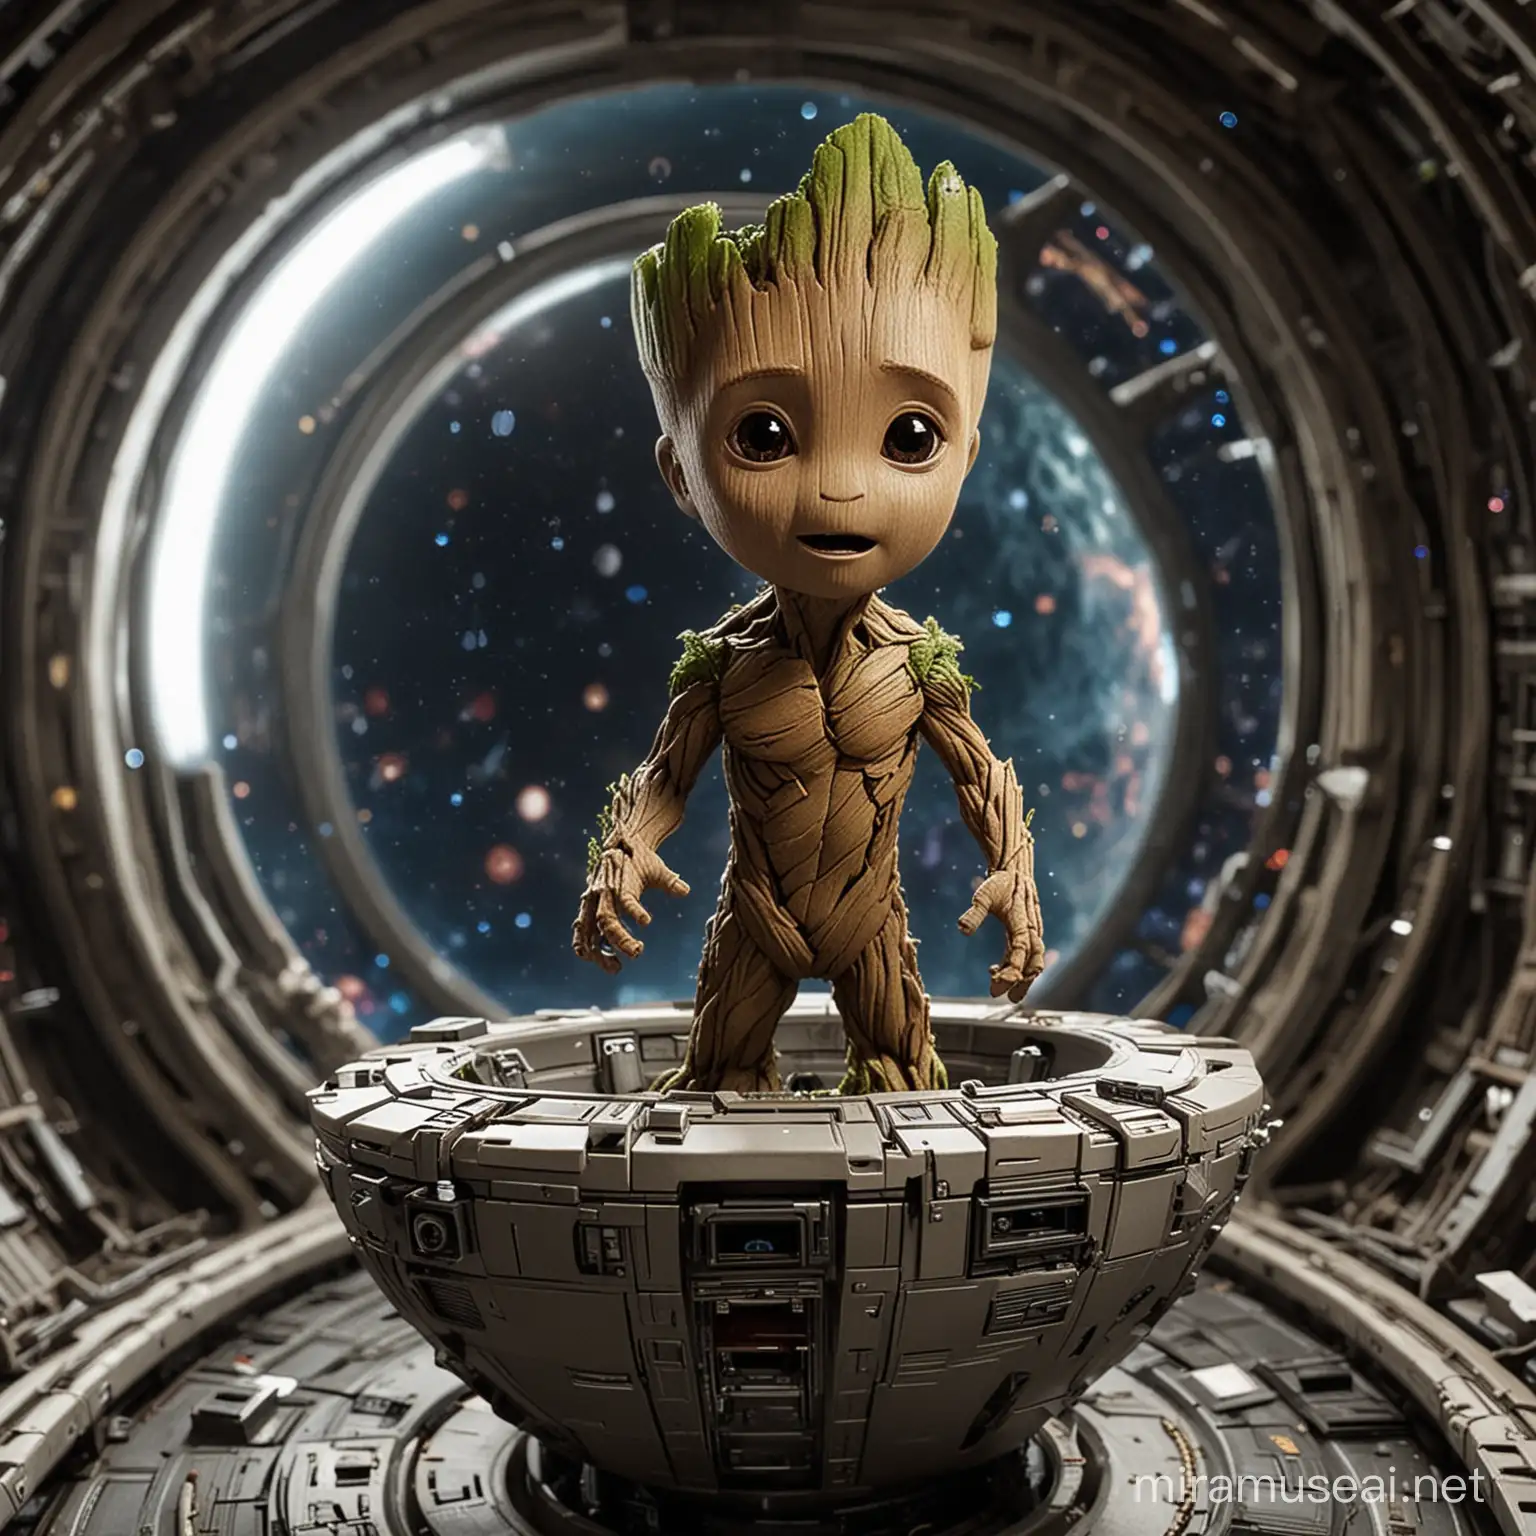 Baby Groot on Spaceship